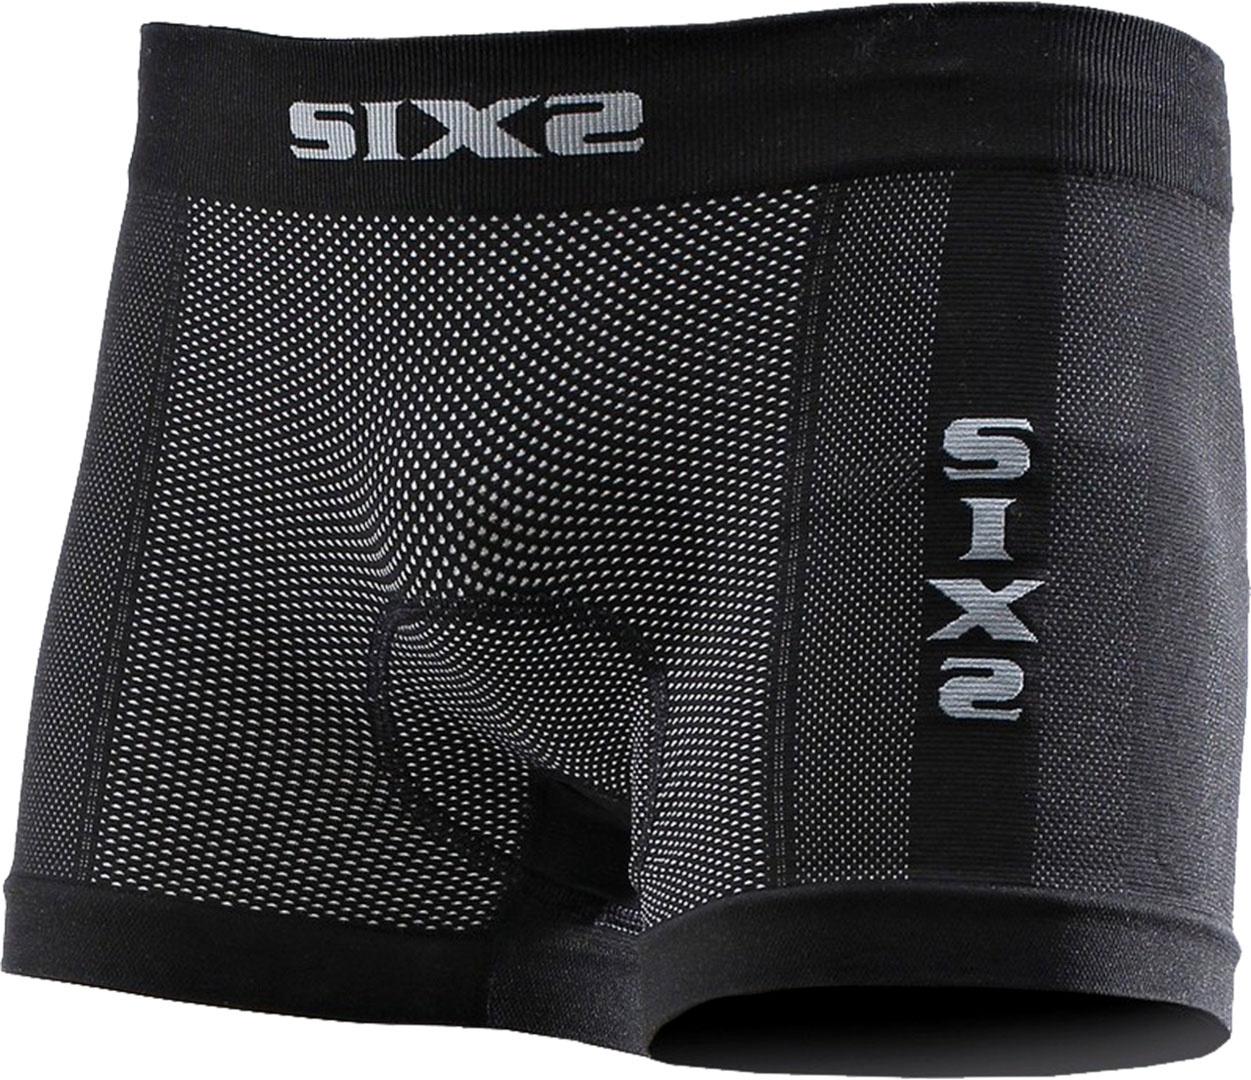 Sixs BOX2, caleçon unisexe - Noir - M/L